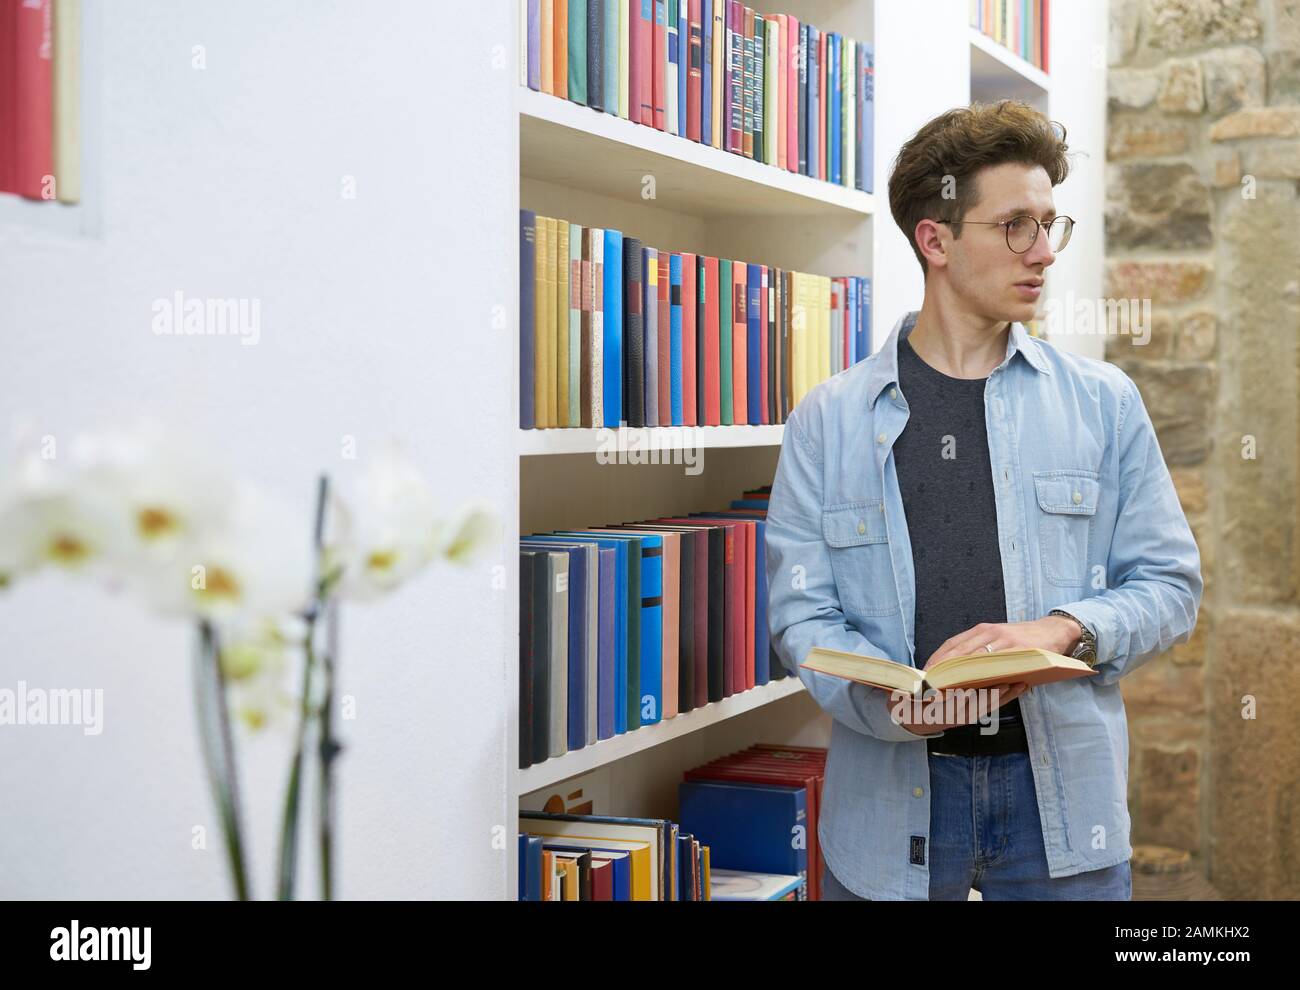 Estudiante joven con gafas en la biblioteca mirando a su lado izquierdo y sosteniendo un libro en sus manos. Foto de stock